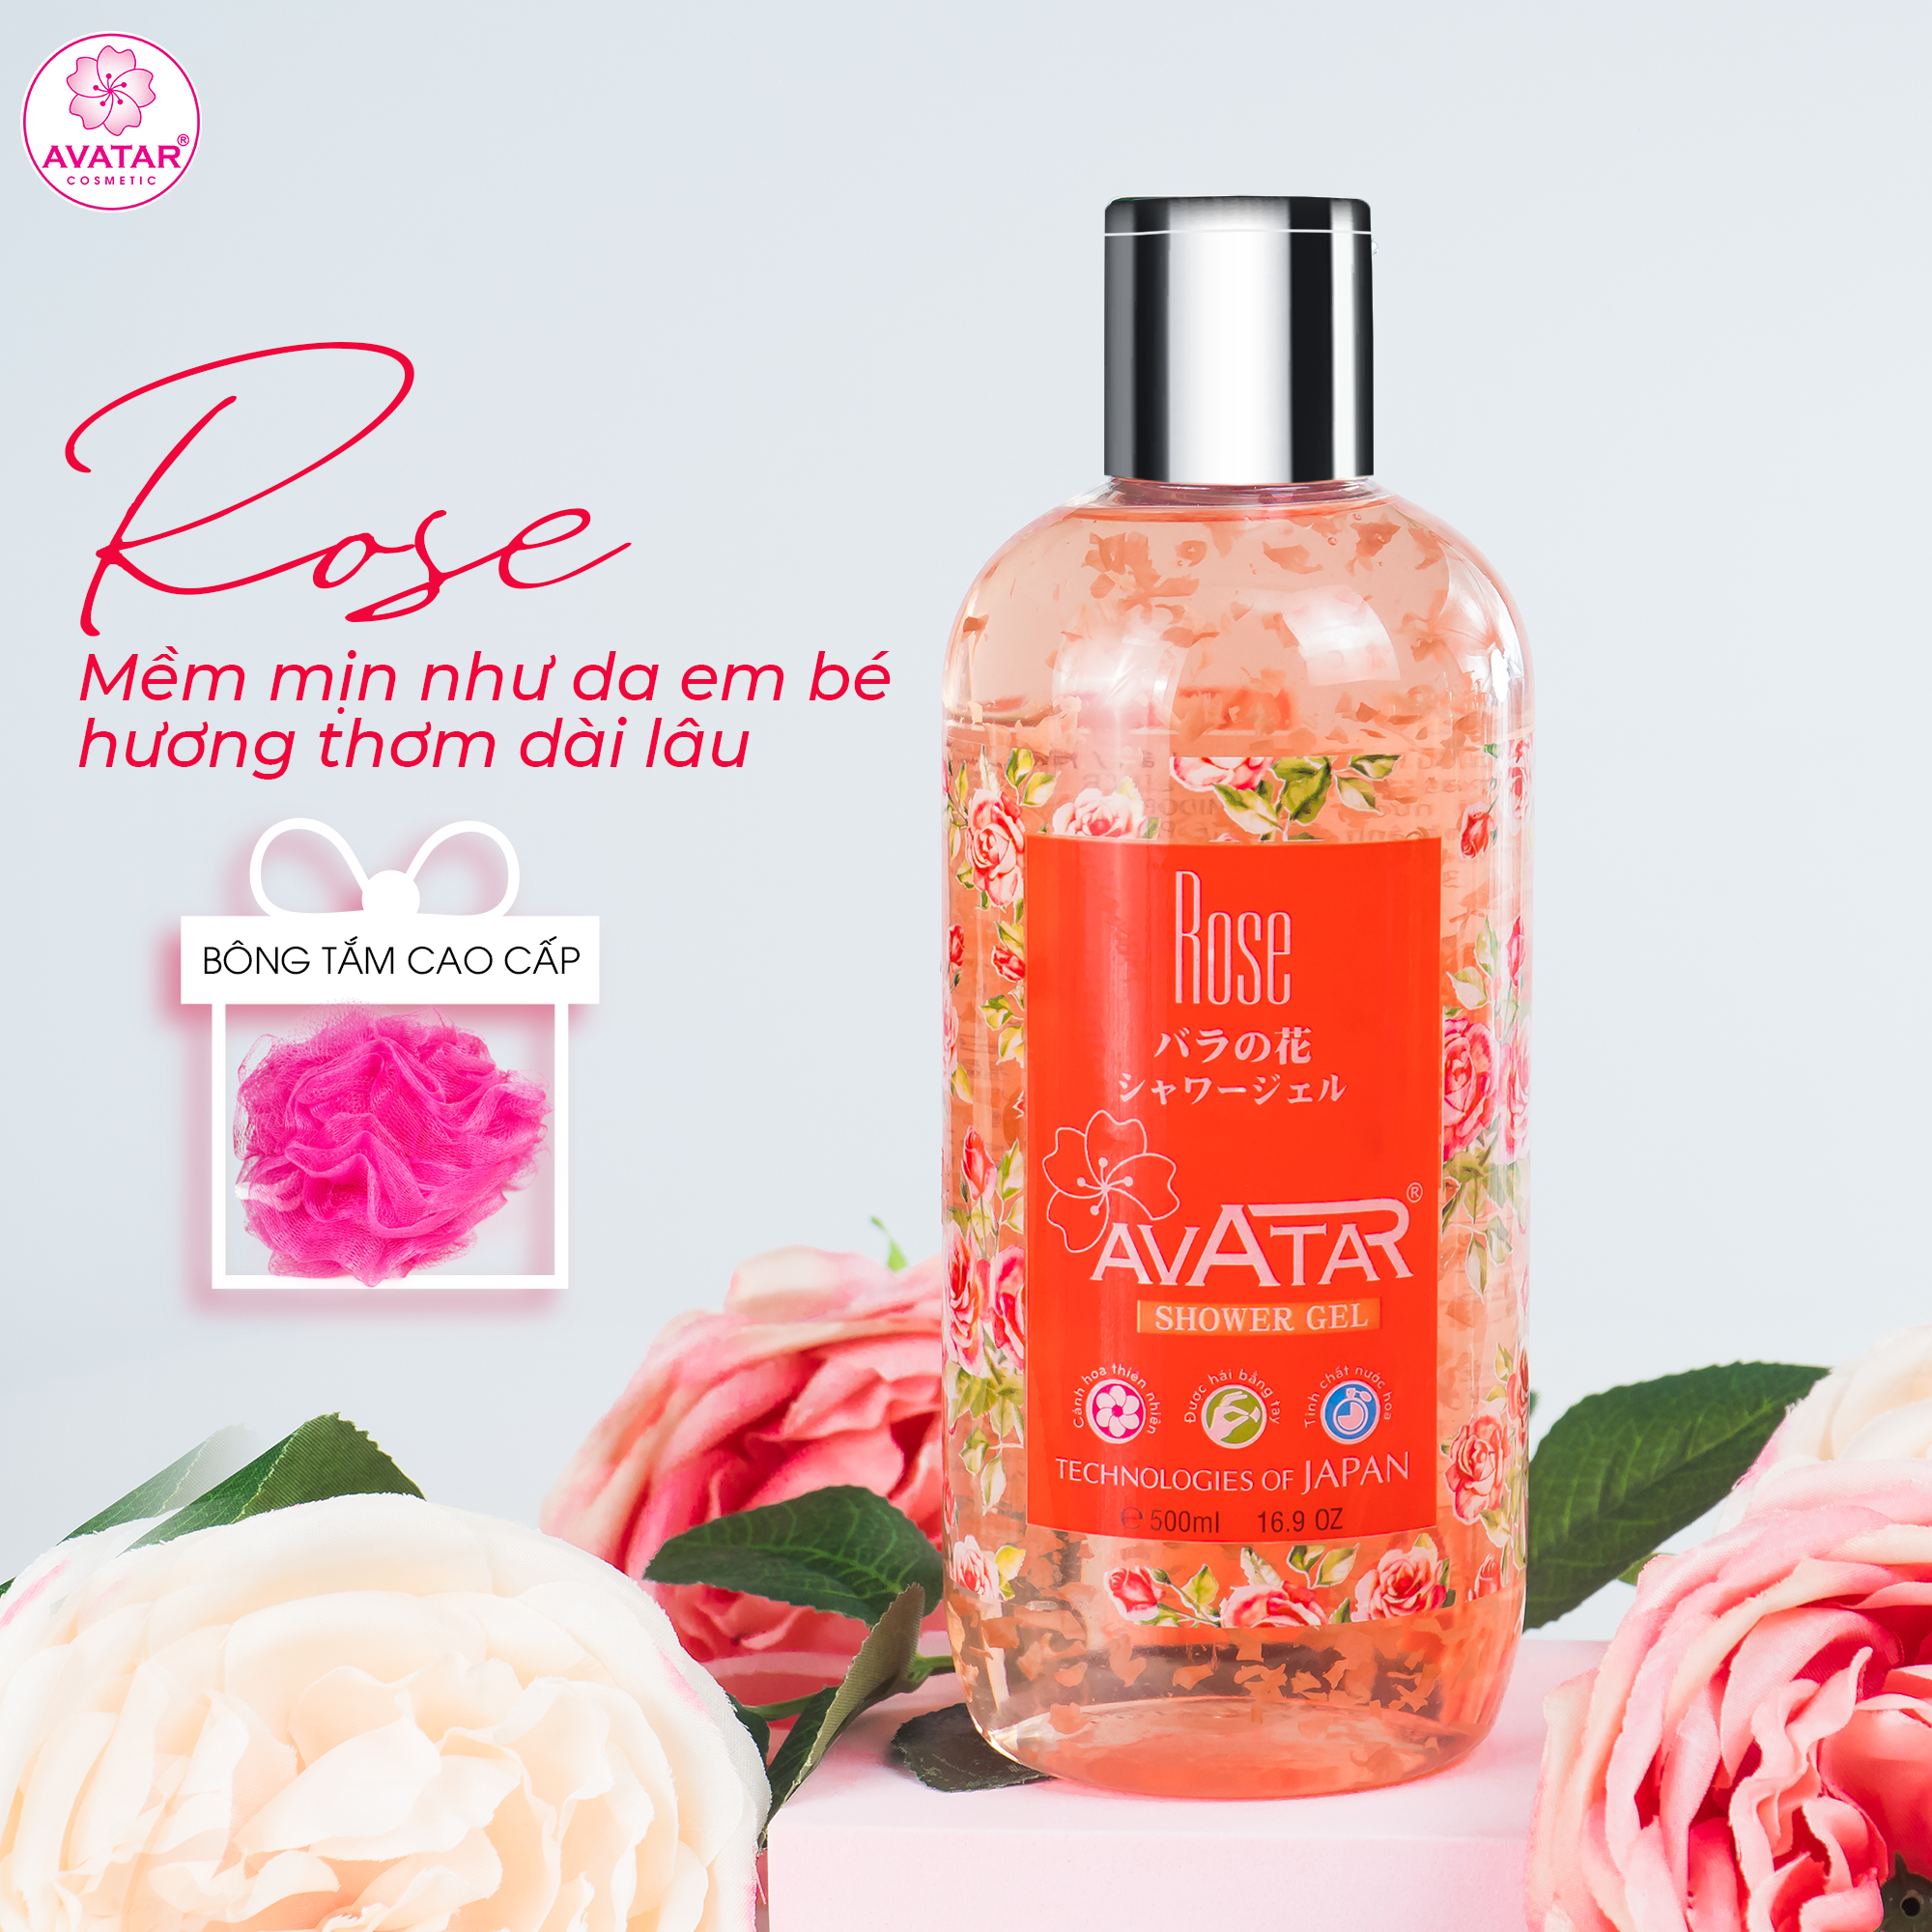 Sữa tắm Nhật cao cấp cánh hoa hồng Rose 500ml- giúp tươi trẻ làn da mịn màng, mềm mại và trắng hồng